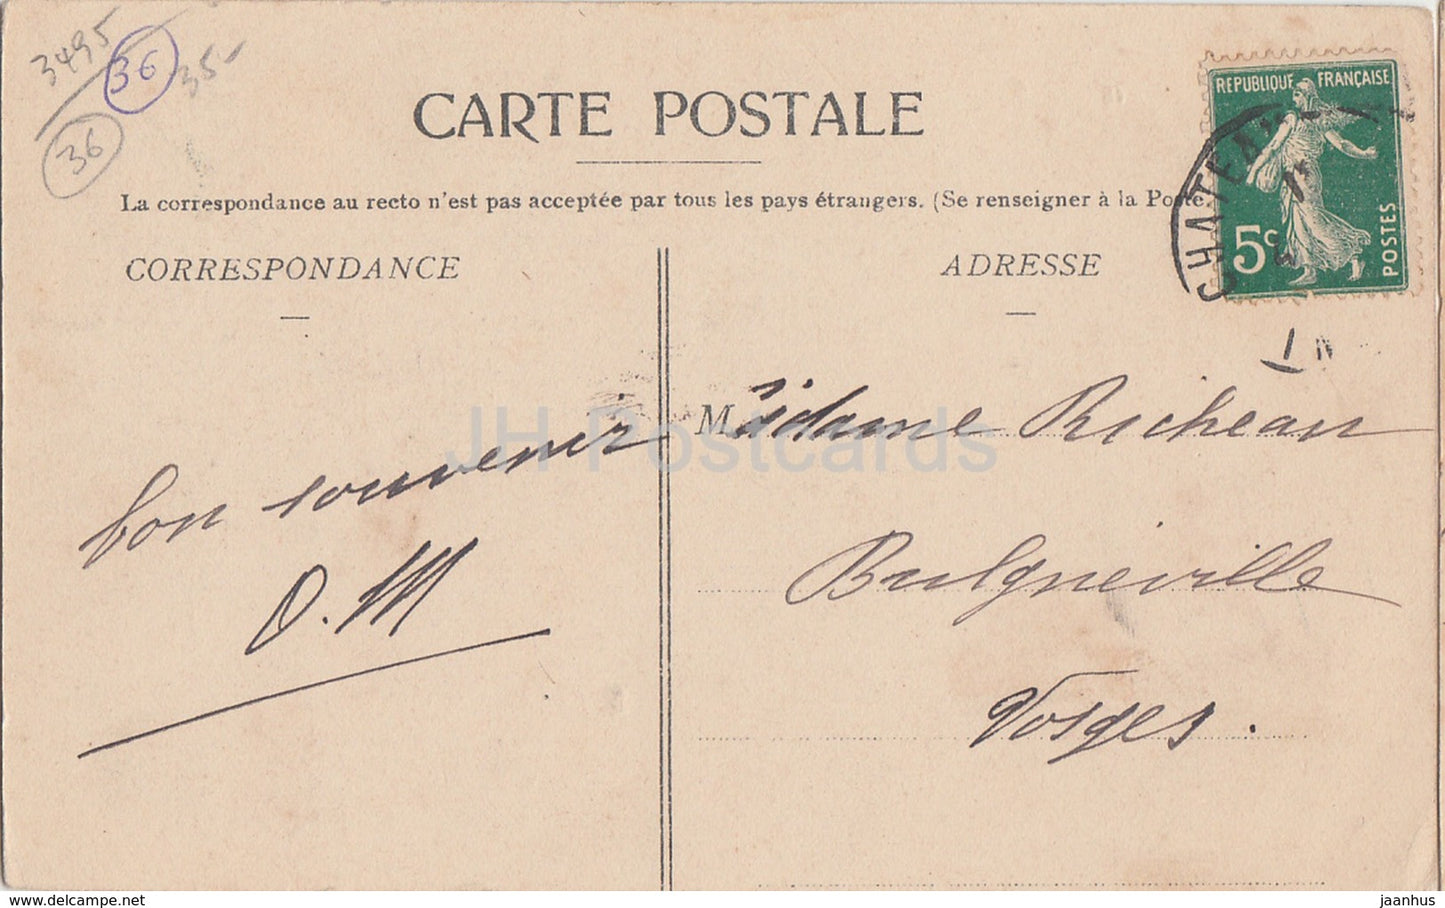 Chateau de Saint Gaultier - Chateaux de l'Indre - Schloss - 3115 - alte Postkarte - Frankreich - gebraucht